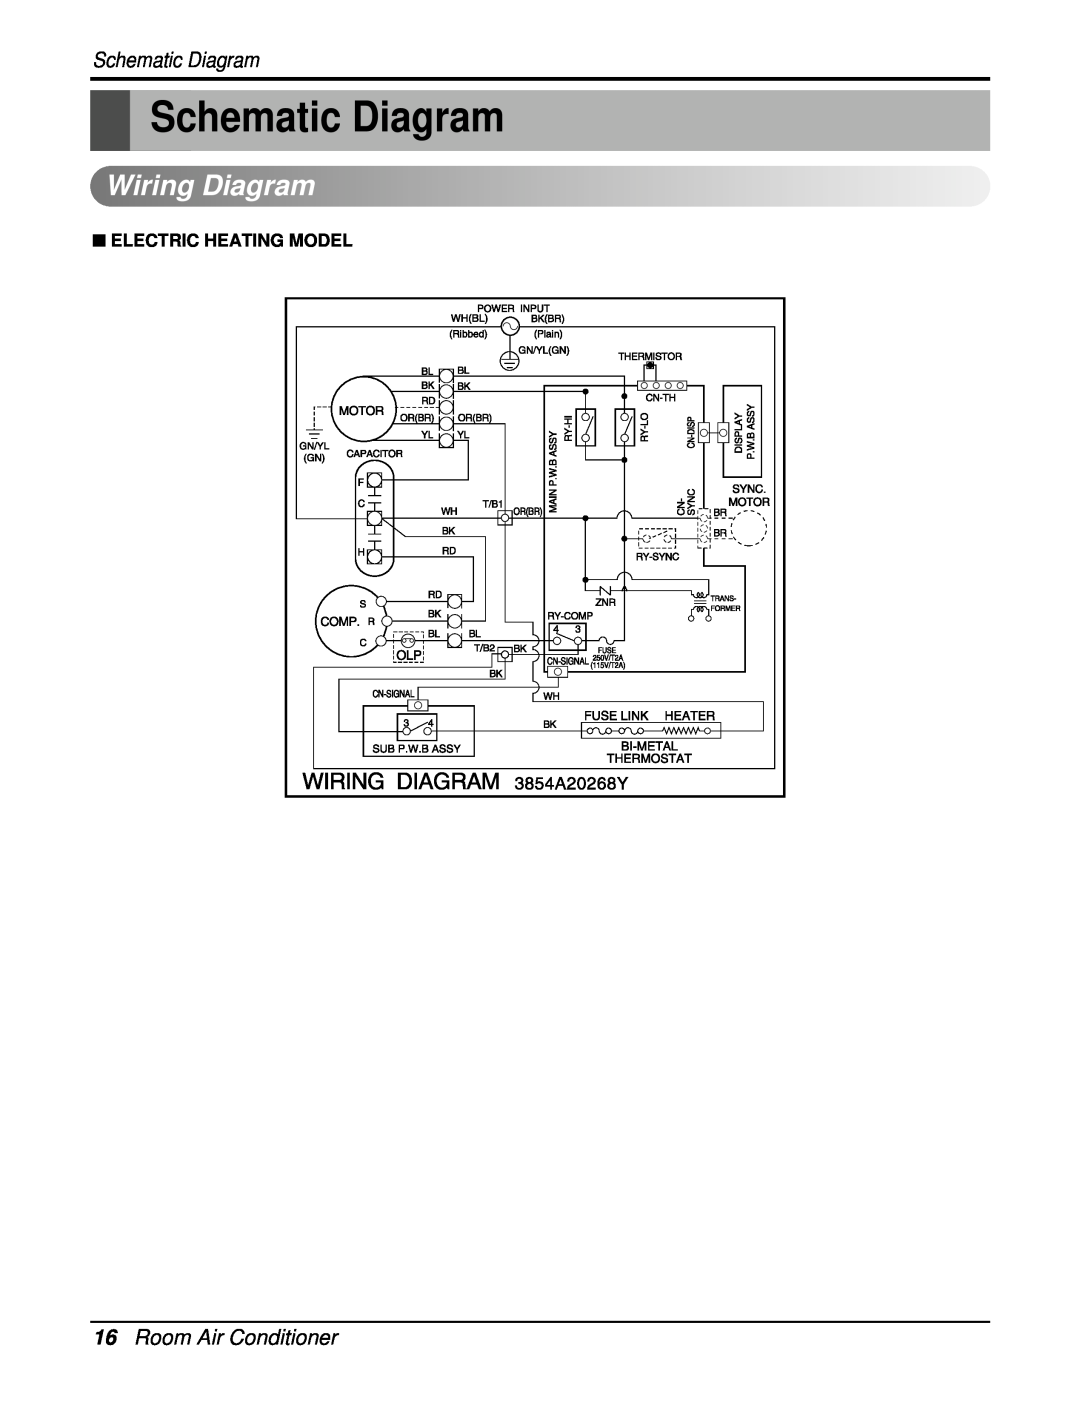 Friedrich UE10C33, UE12C33, UE08C13 manual Schematic Diagram, Wiring Diagram, 16Room Air Conditioner 